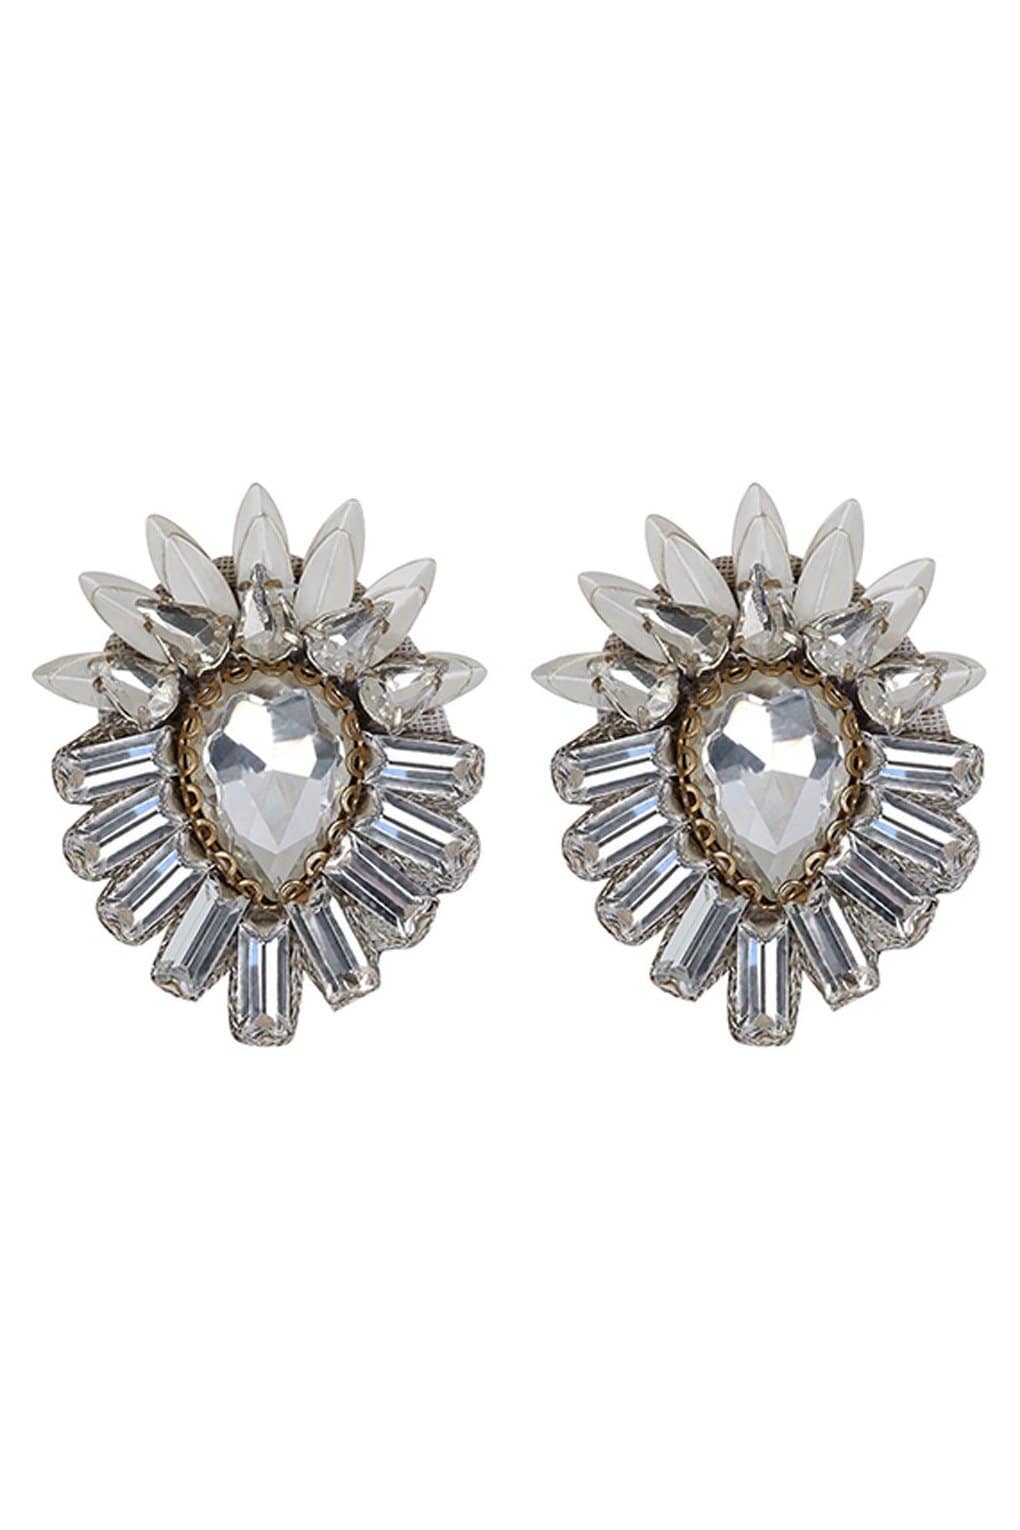 DEEPA GURNANI Aryanna Clip-On Earring - Silver - Magpie Style